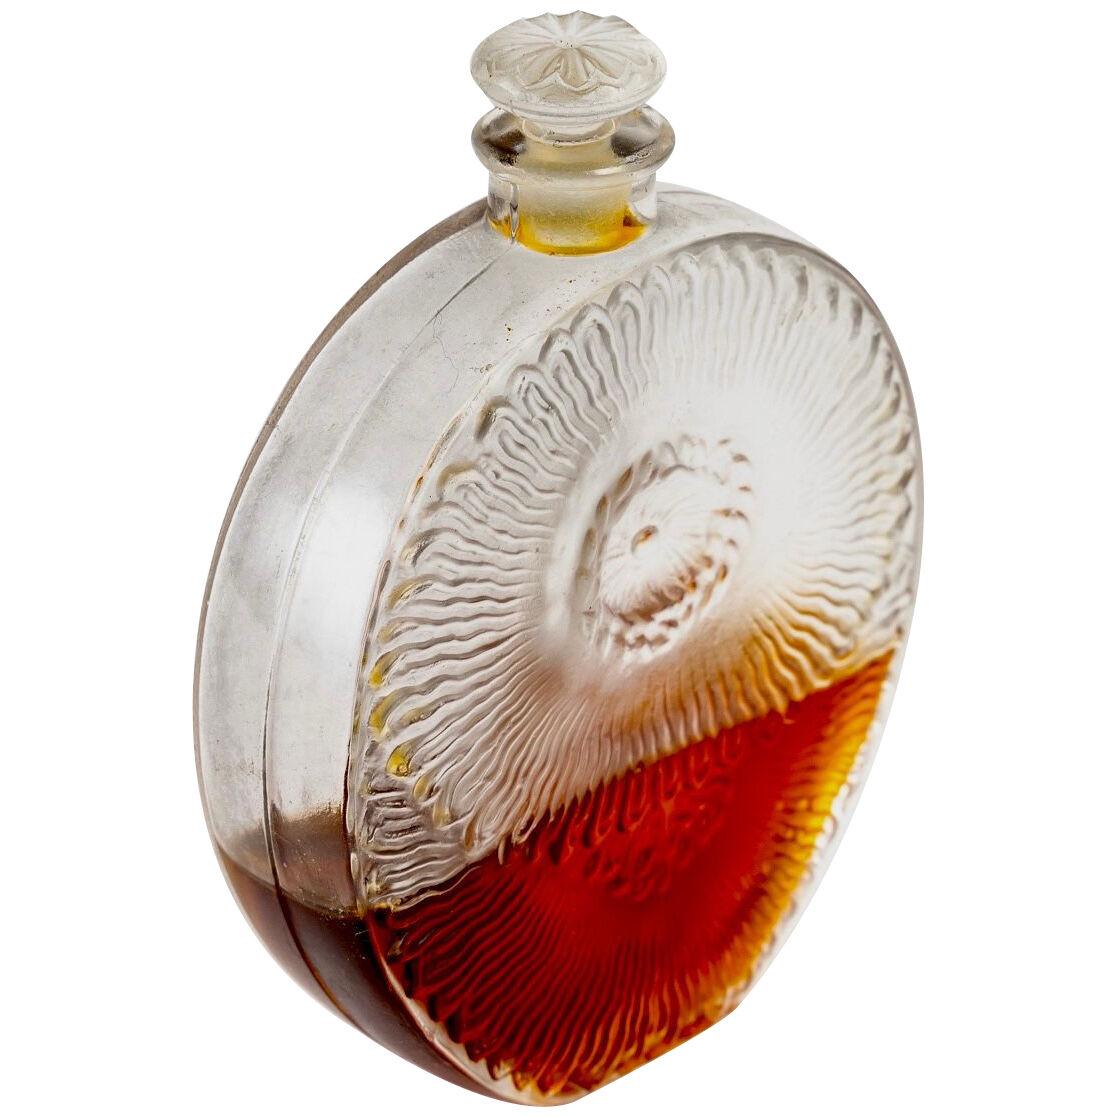 1927 René Lalique Perfume Bottle Pavots d'Argent Clear Glass For Roger & Gallet